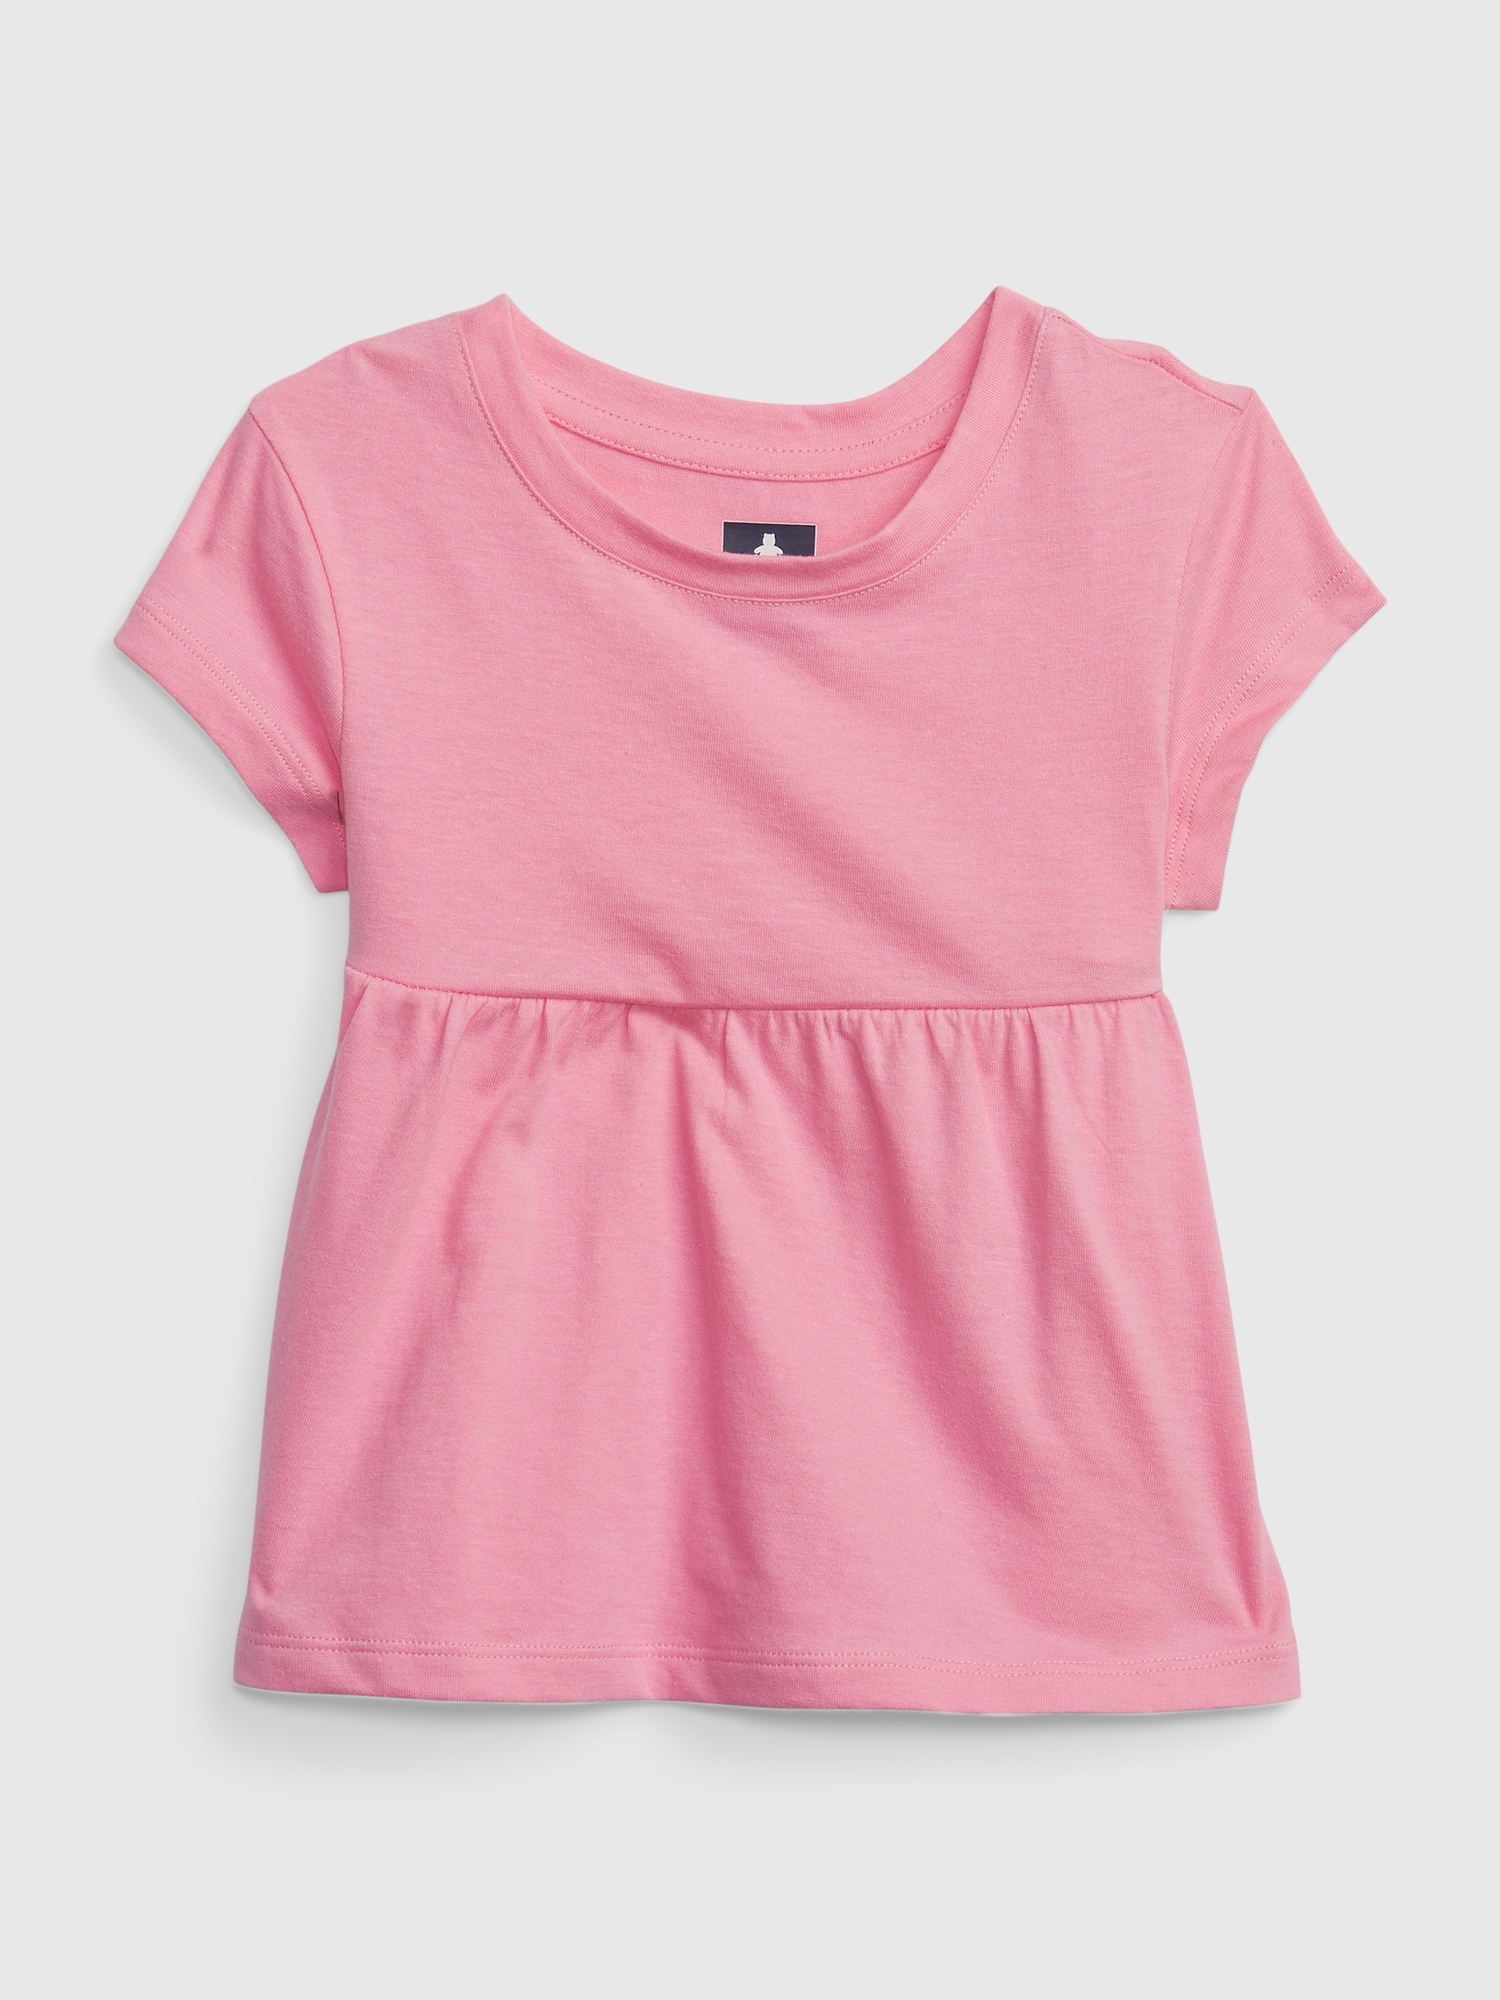 Gap Toddler 100% Organic Cotton Mix and Match Top pink. 1